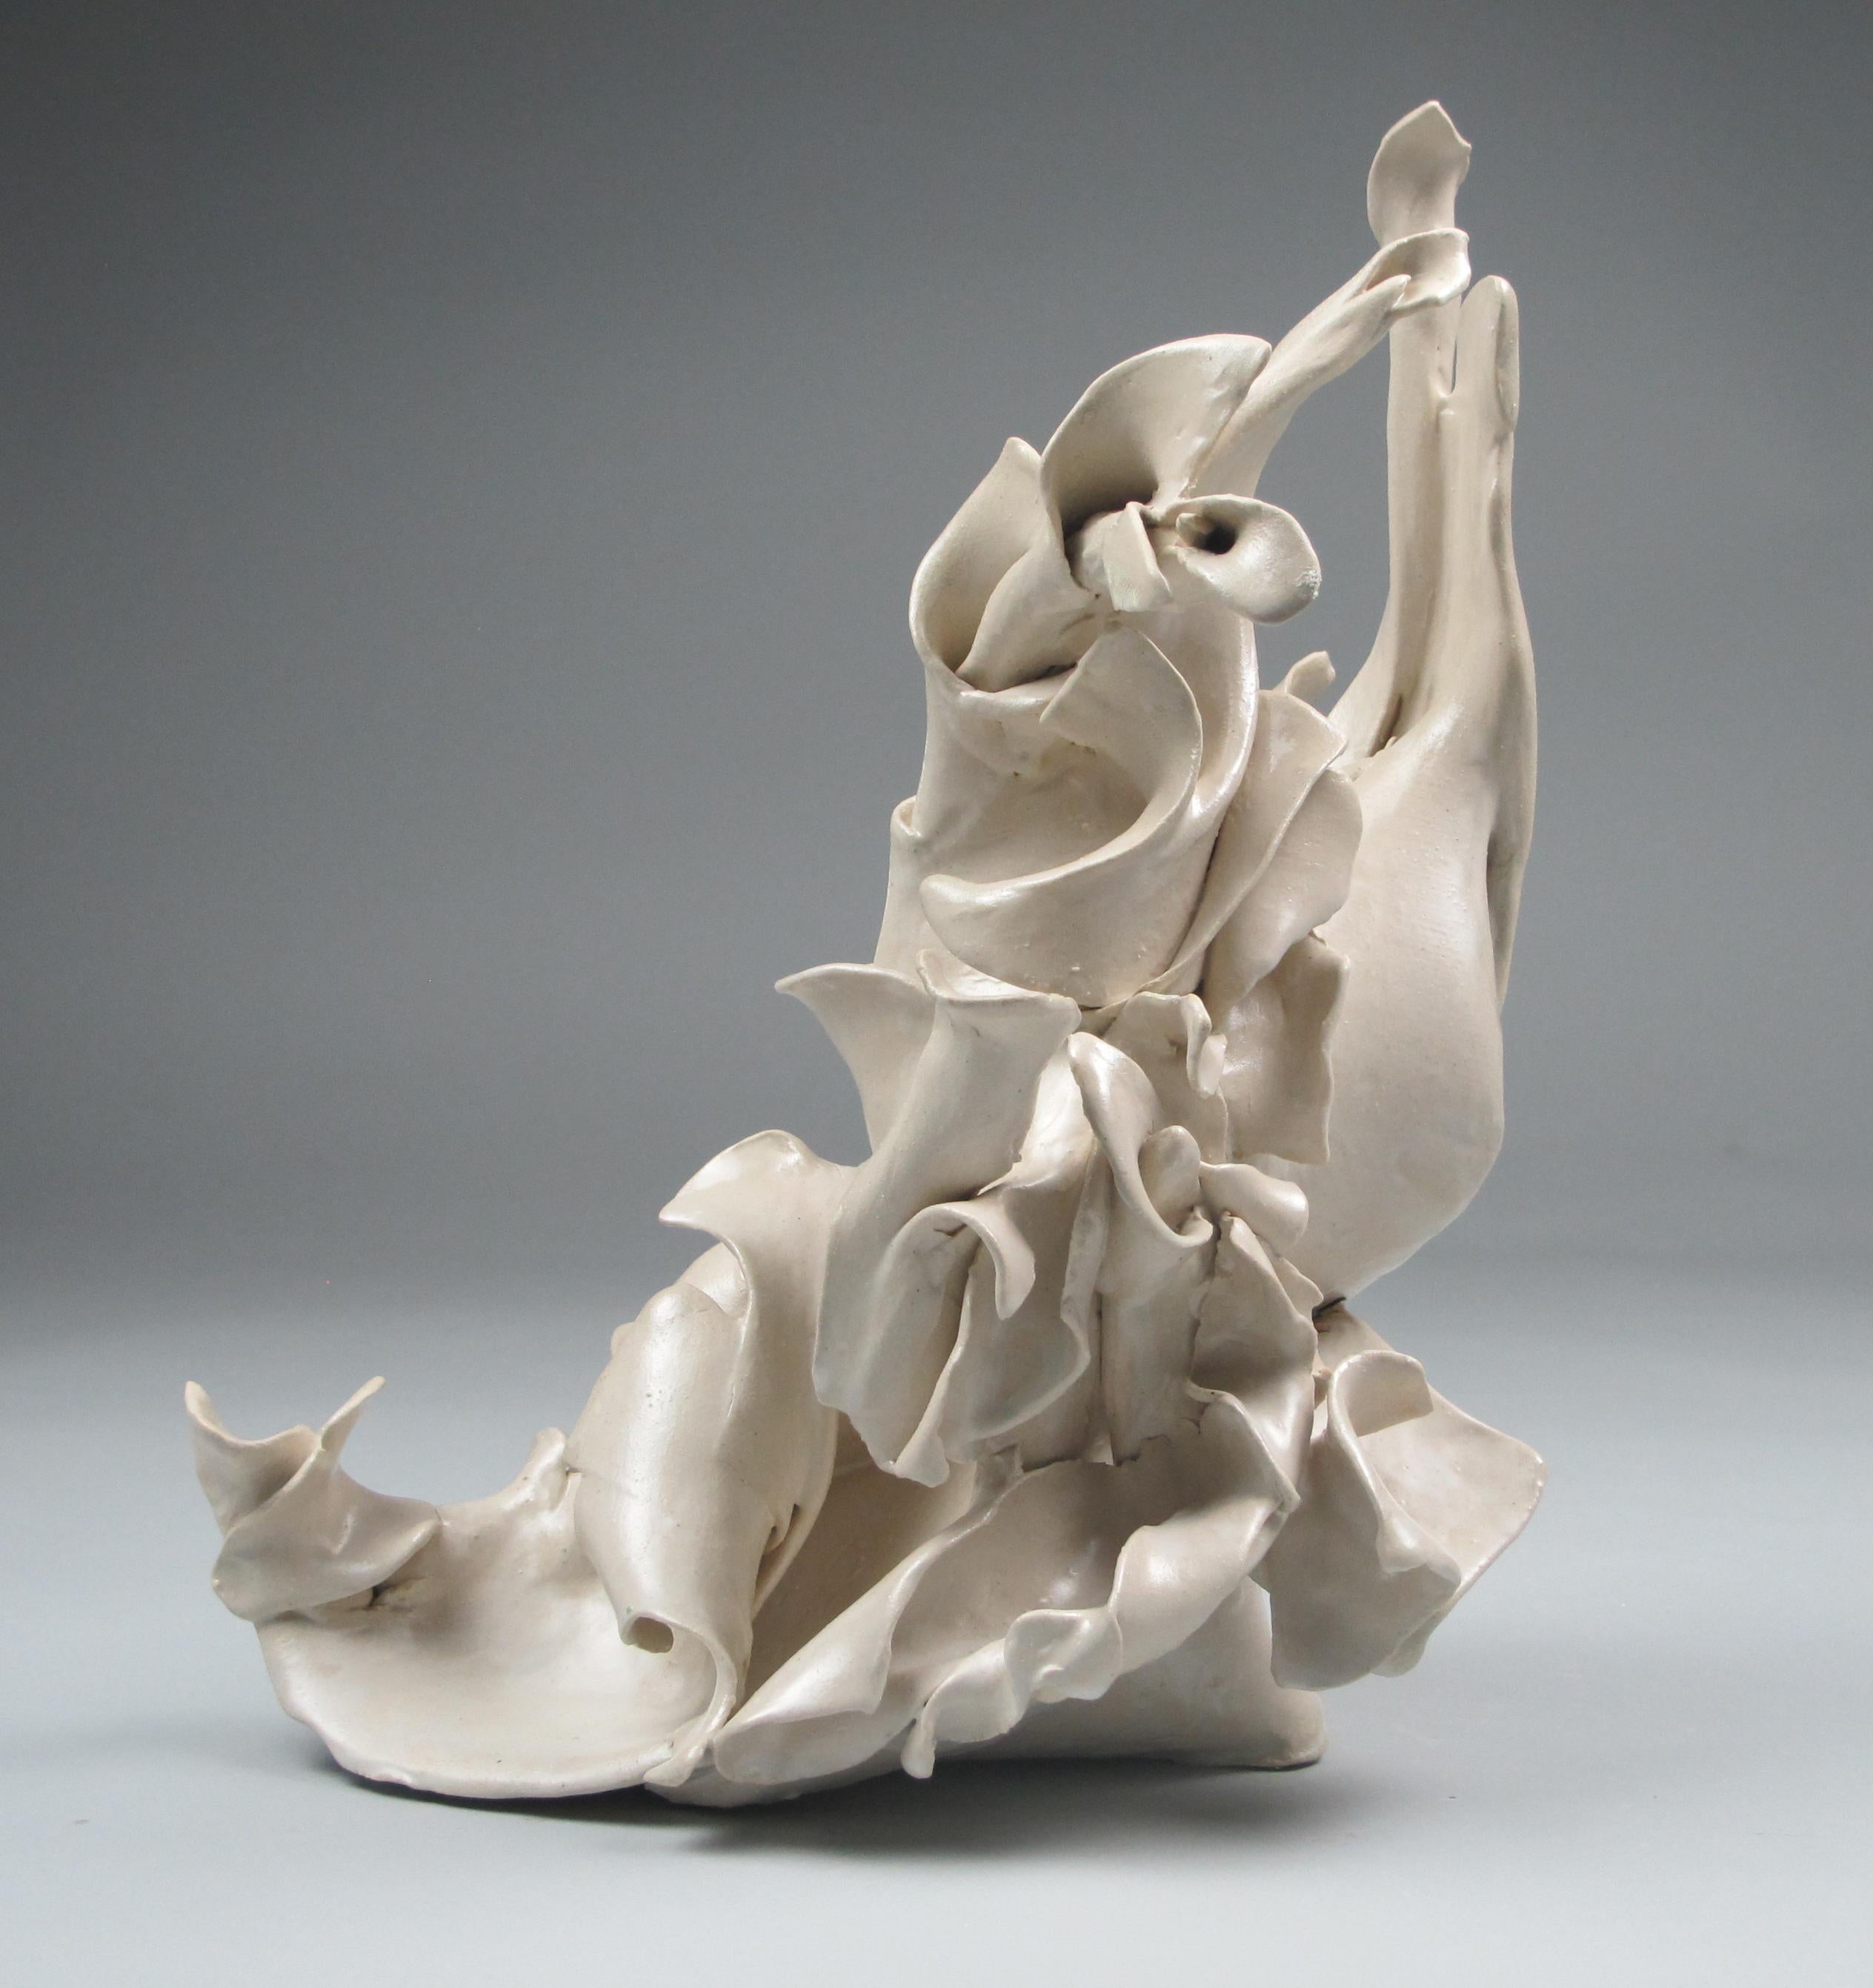 Sara Fine-Wilson Abstract Sculpture - "Almost", gestural, ceramic, sculpture, white, cream, stoneware